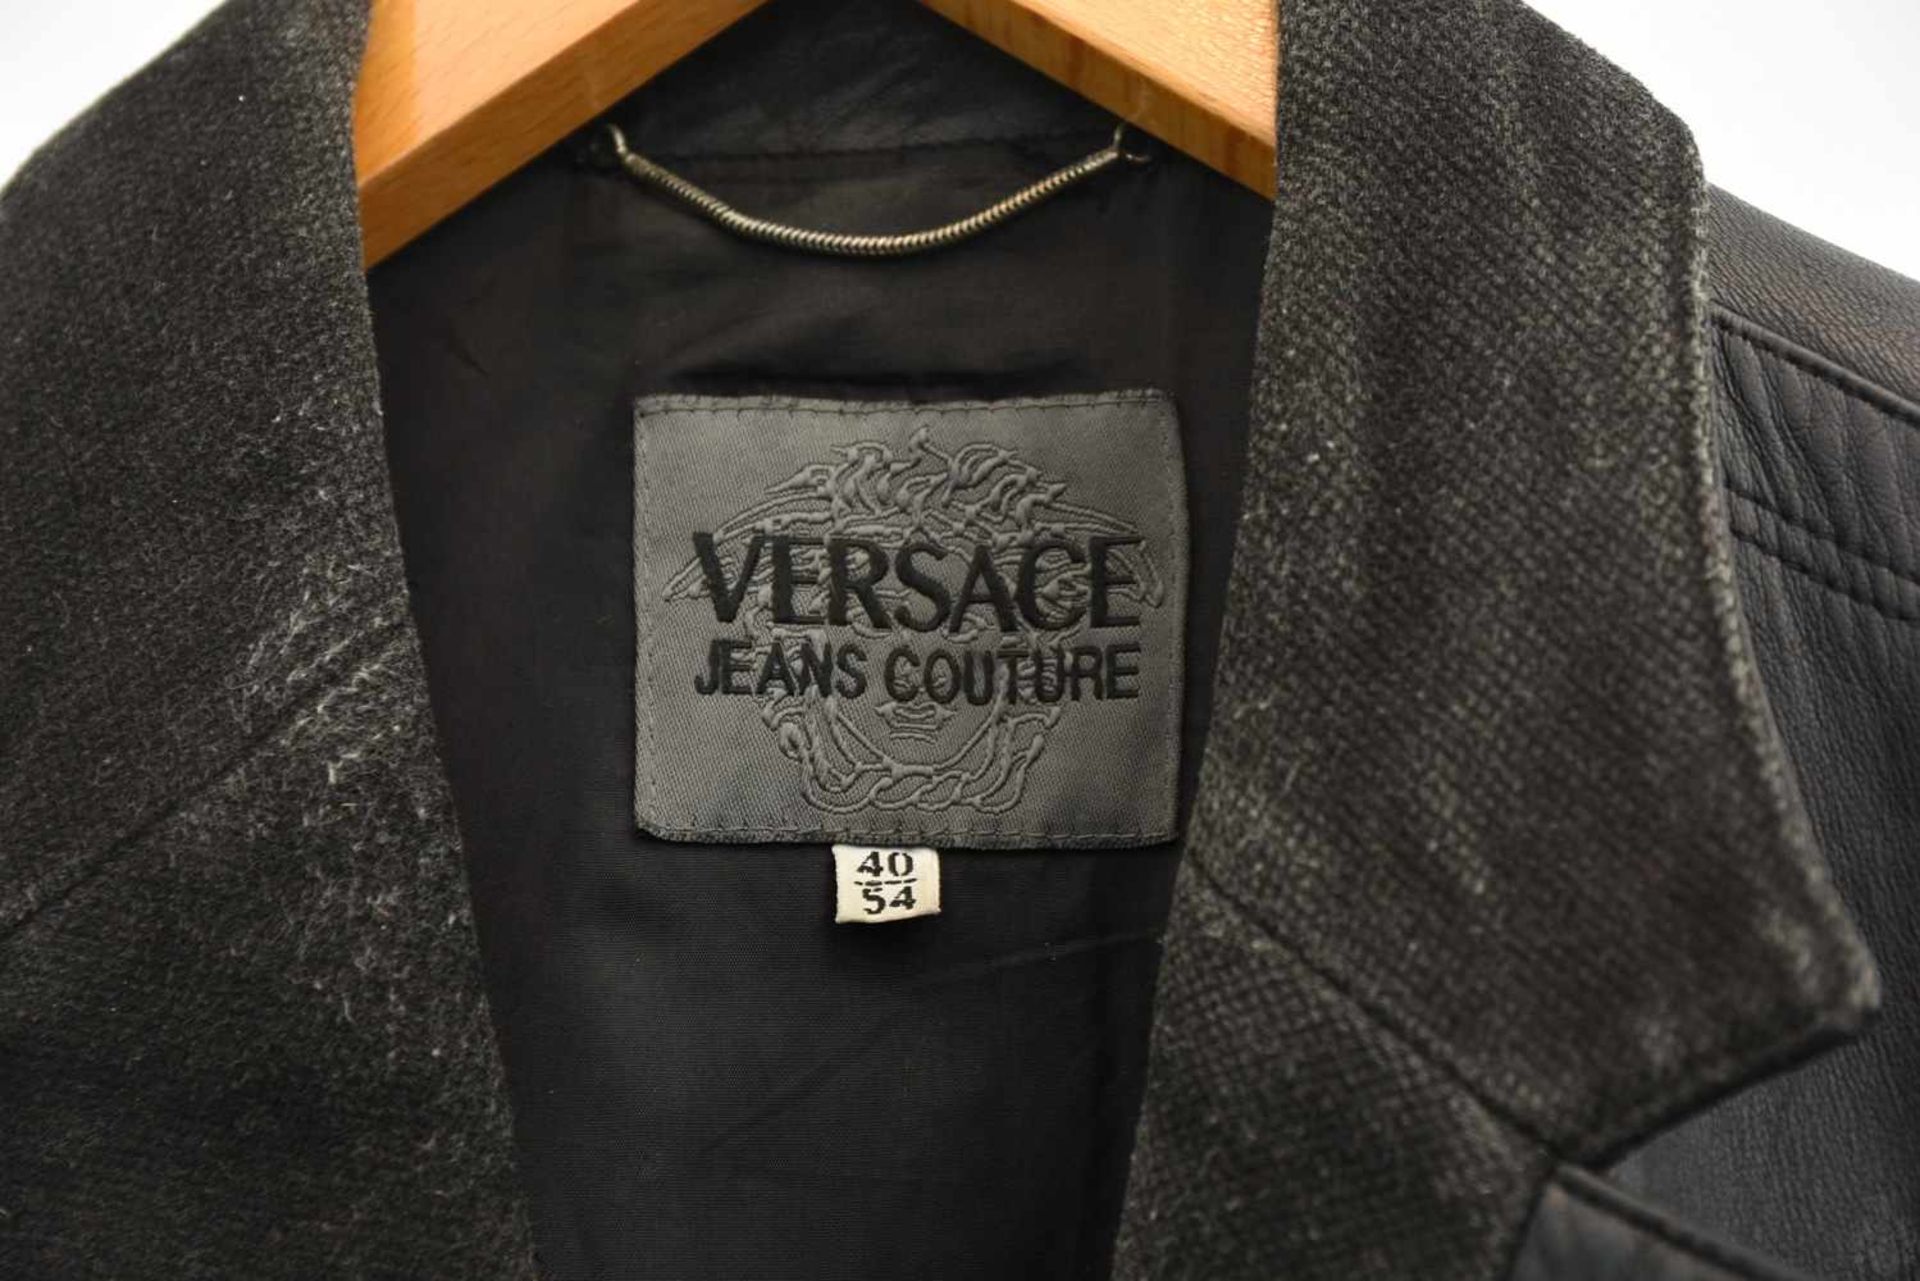 VERSACE "JEANS COUTURE" HERRENJACKE GR 40/54,schwarzes Leder/Polyester, Italien 2000er-Jahre - Bild 3 aus 8